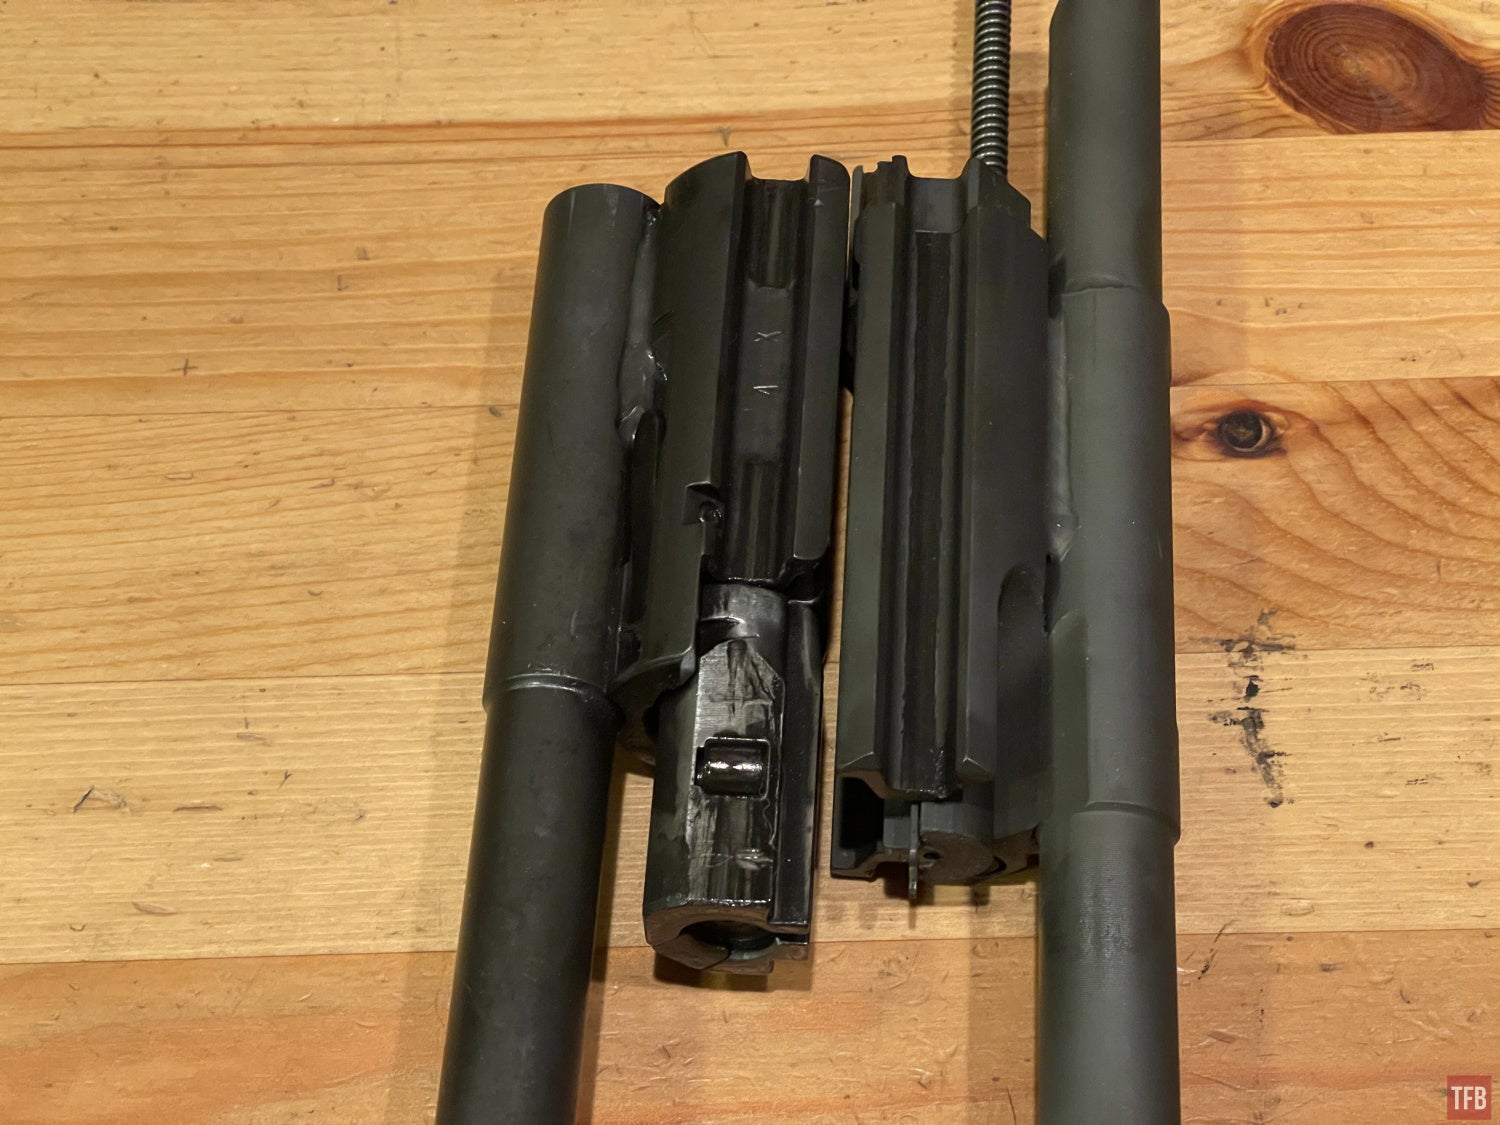 HK91 conversion bolt next to regular bolt